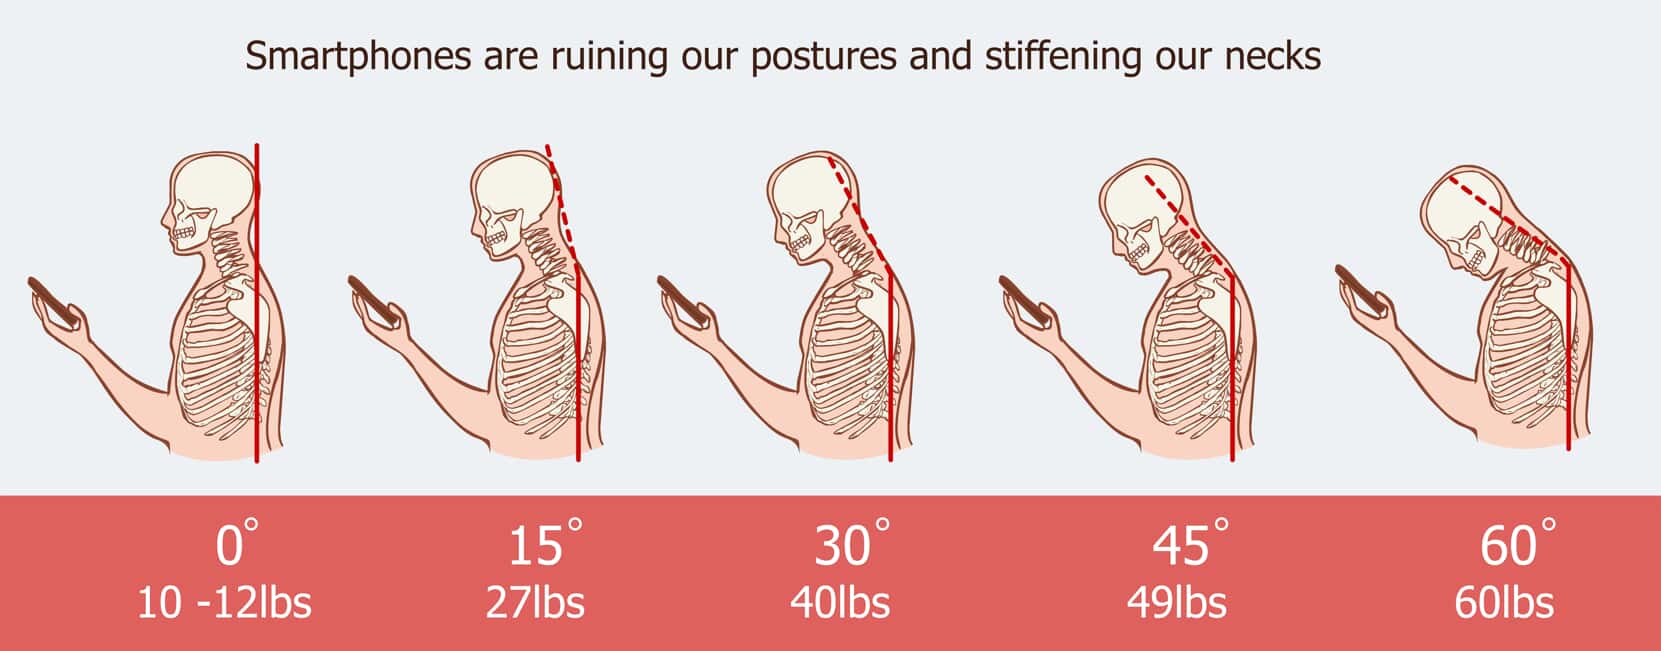 Smartphone posture